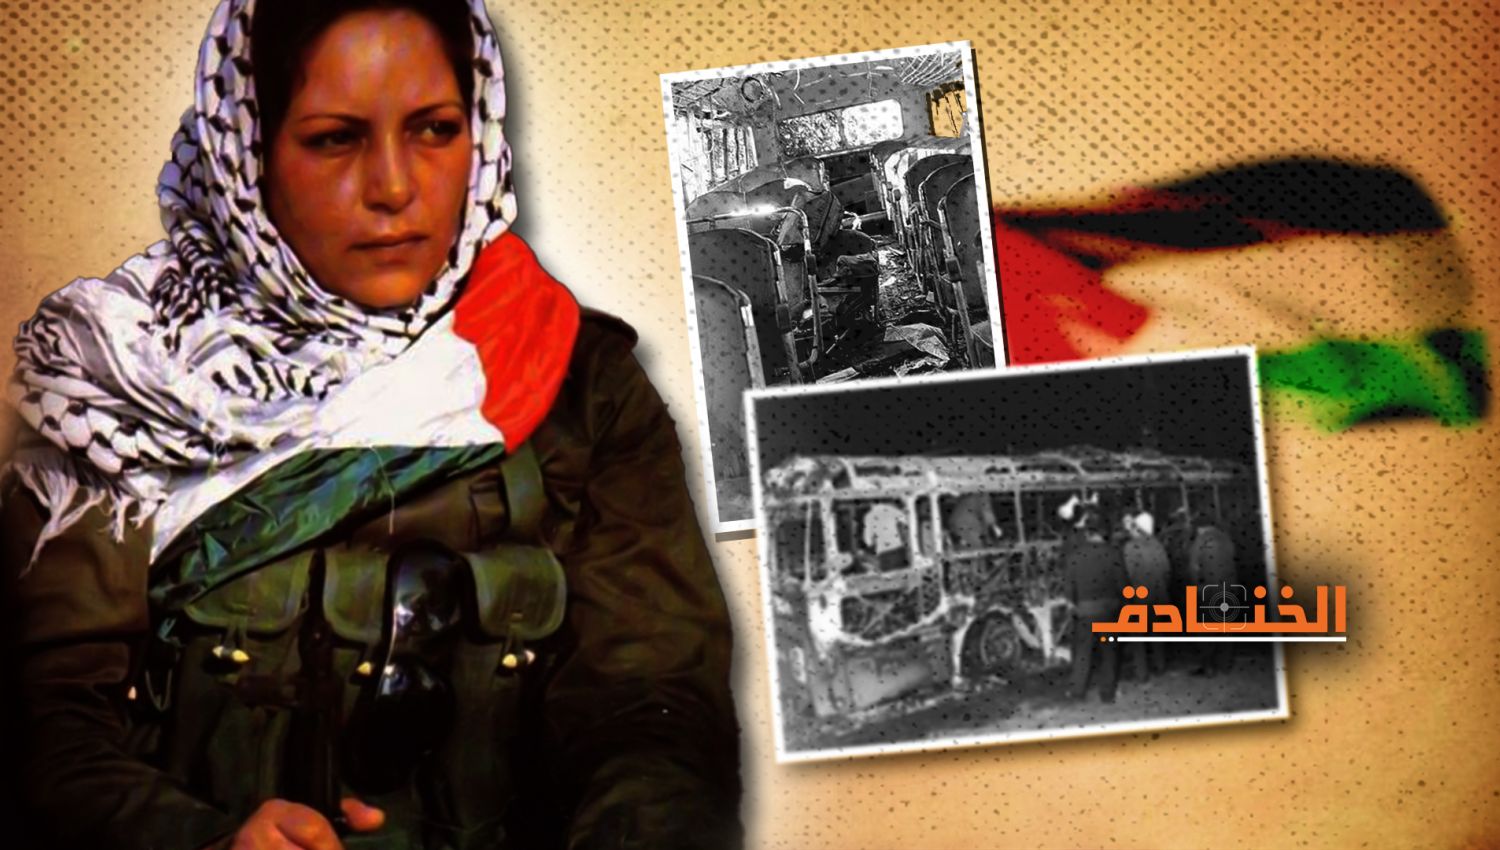 الشهيدة دلال المغربي ومجموعتها: اختطاف باص الاحتلال في "تل أبيب"!